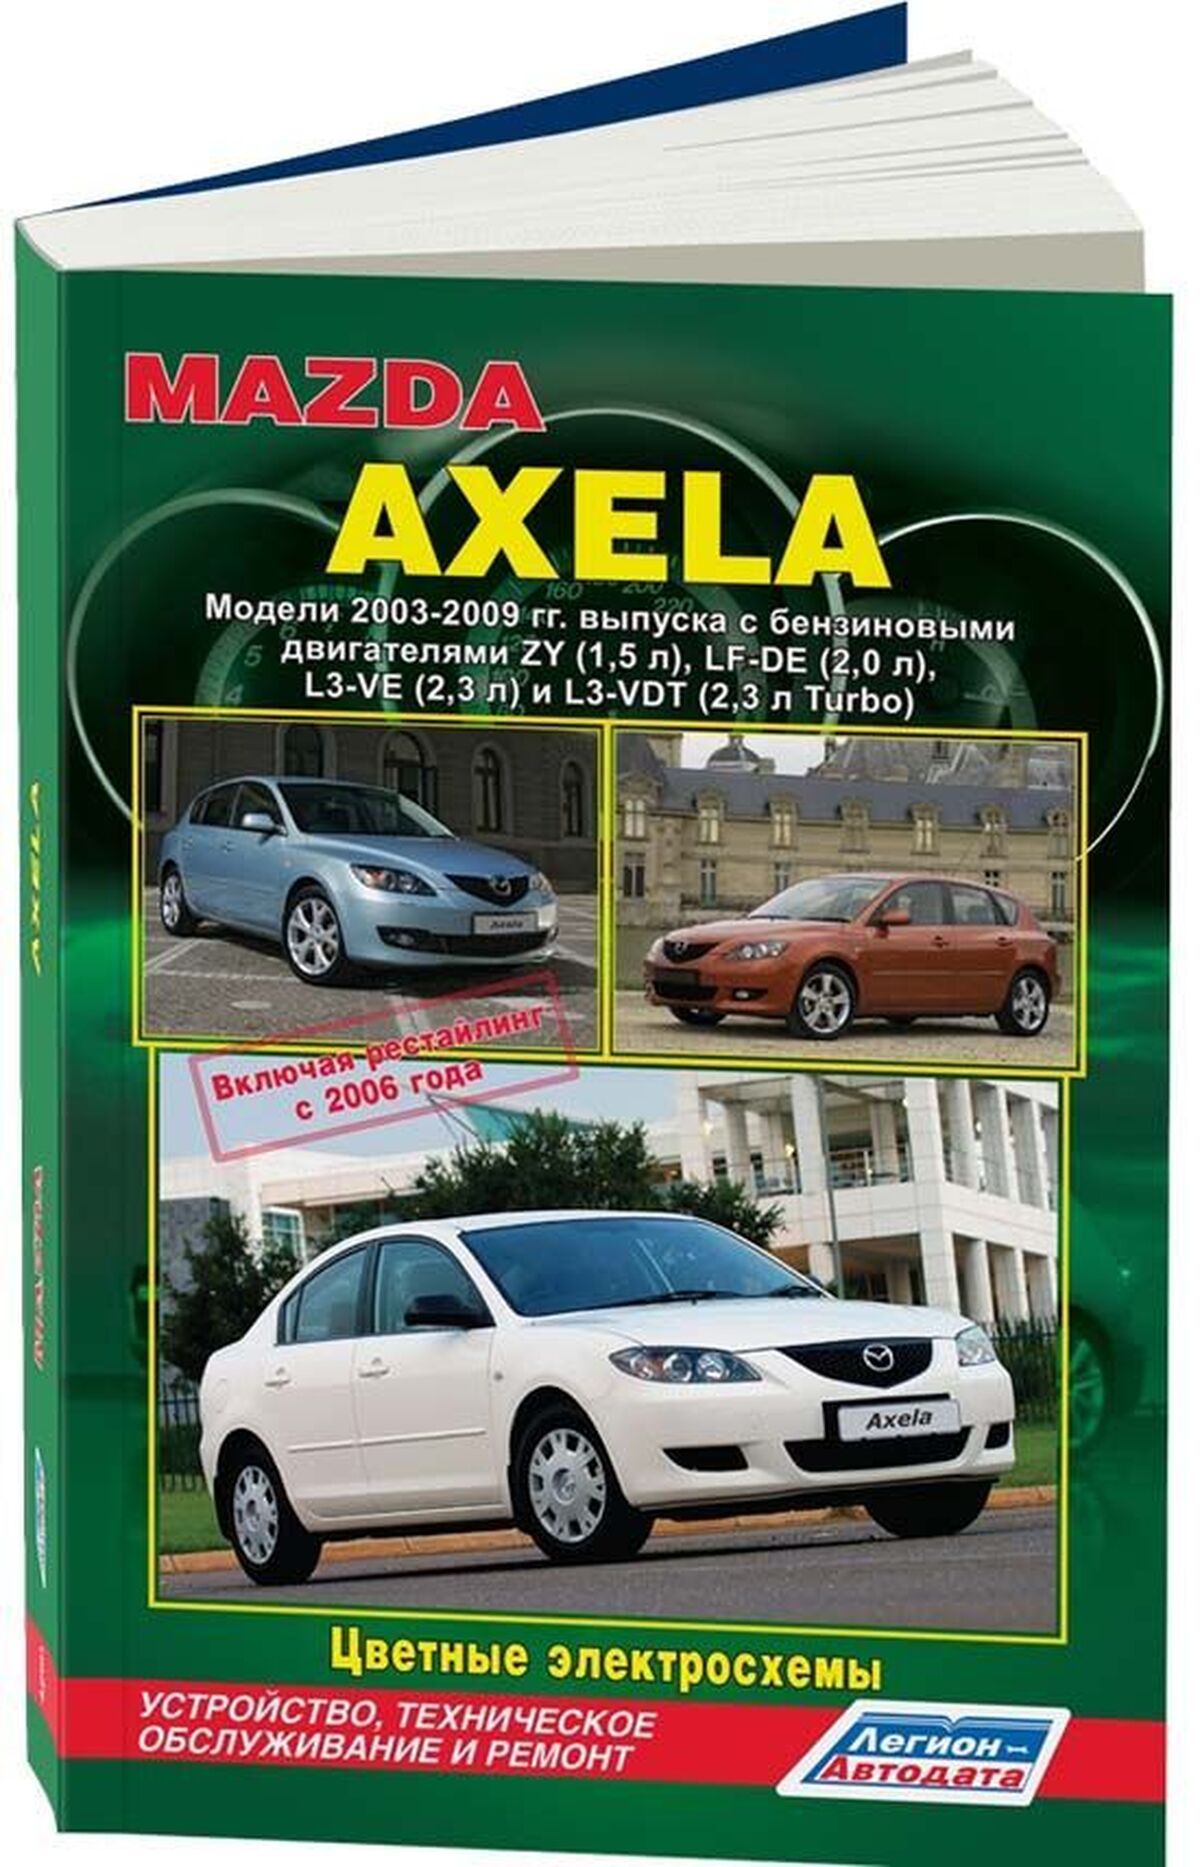 Книга: MAZDA AXELA (б) 2003-2009 г.в. + рест. 2006 г. рем., экспл., то | Легион-Aвтодата